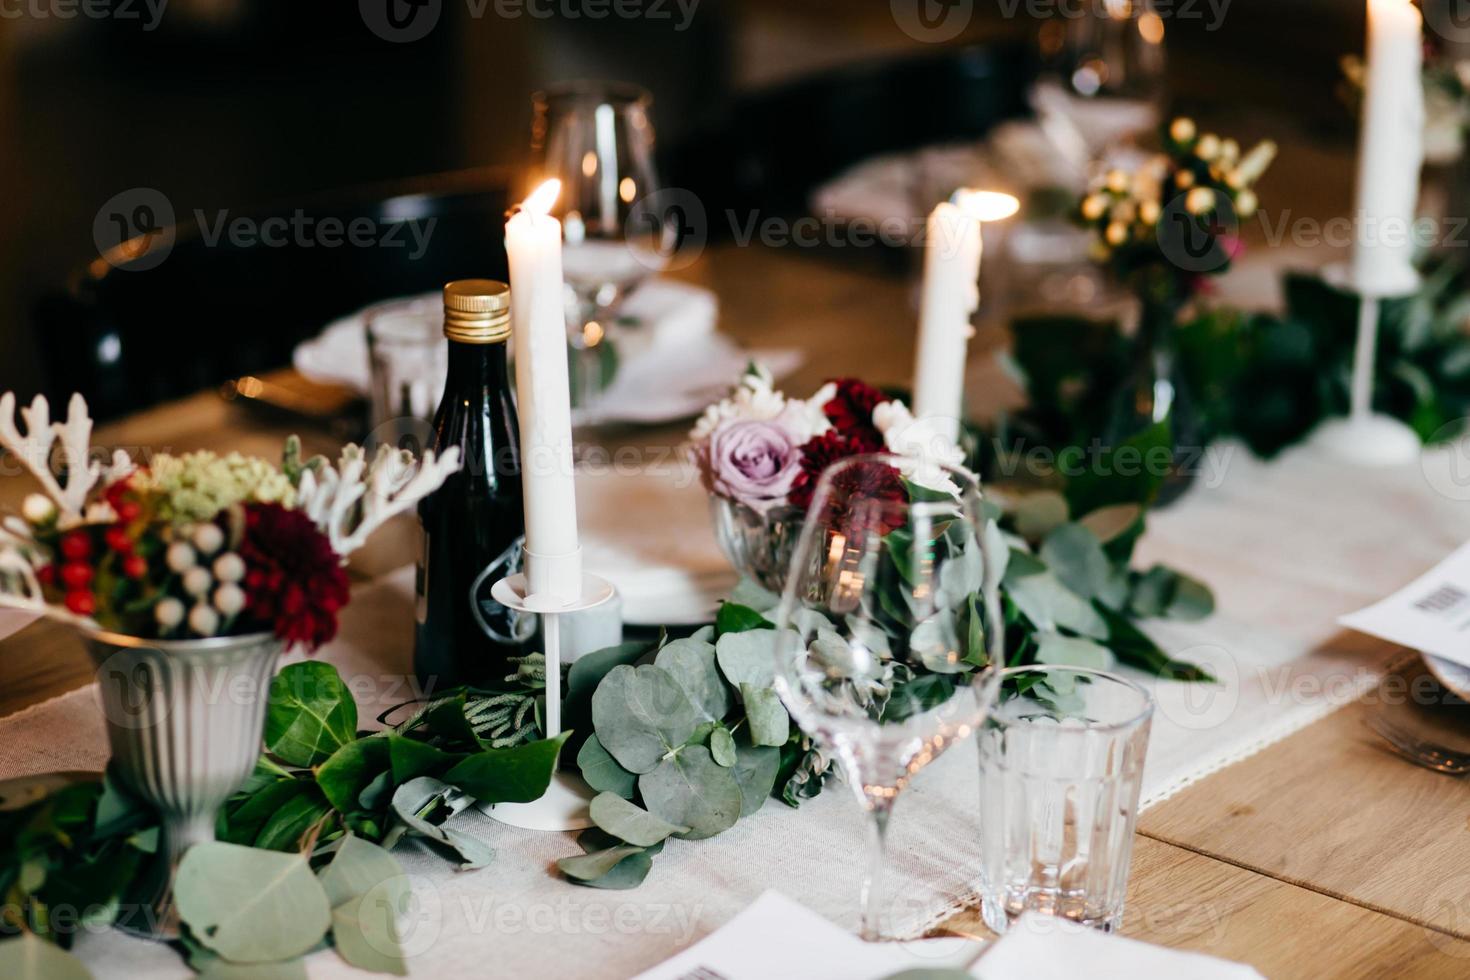 tafel geserveerd voor huwelijksfeest. kaarsen, decoratie, bestek en drankjes op feestelijke tafel. bruiloft tafel versierd met bloemen en kaarsen. tafelsetting, selectieve focus foto